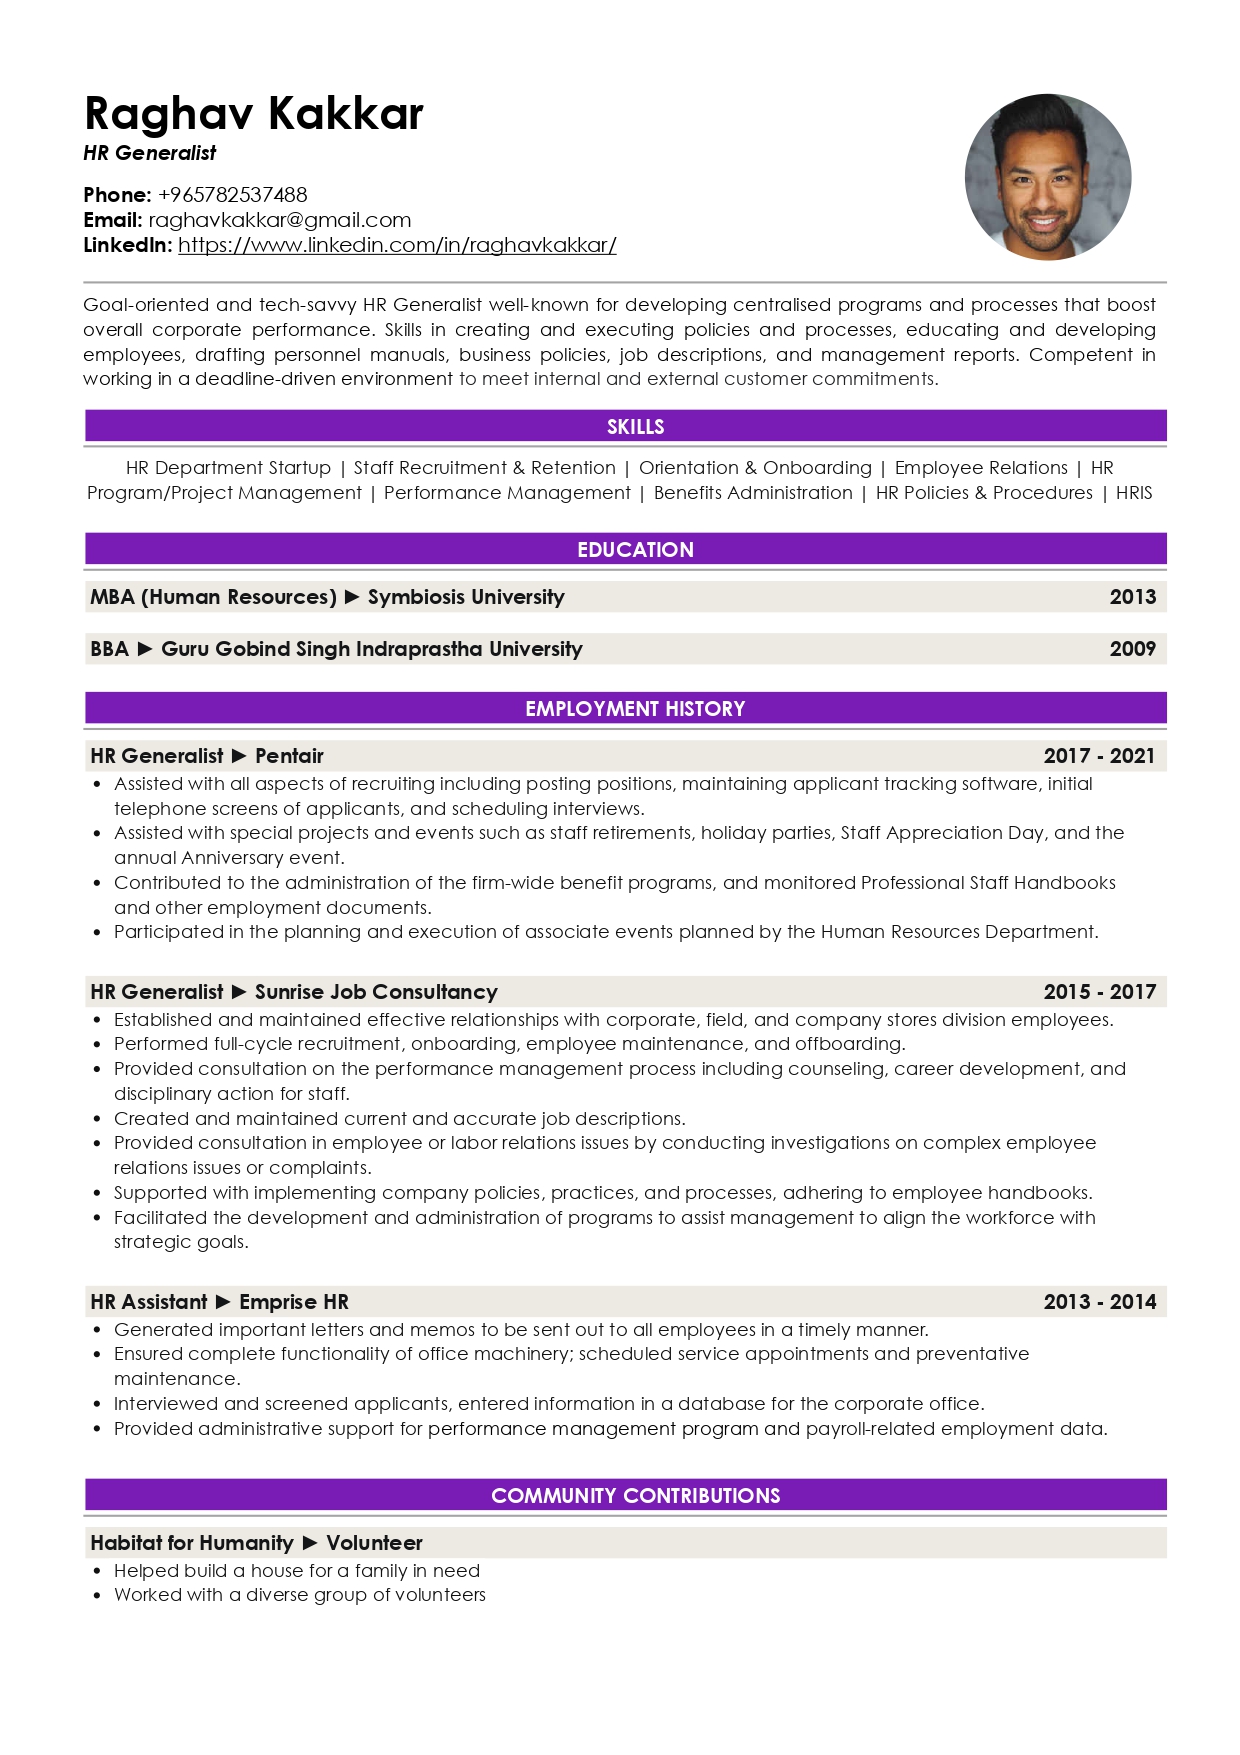 Resume of HR Generalist